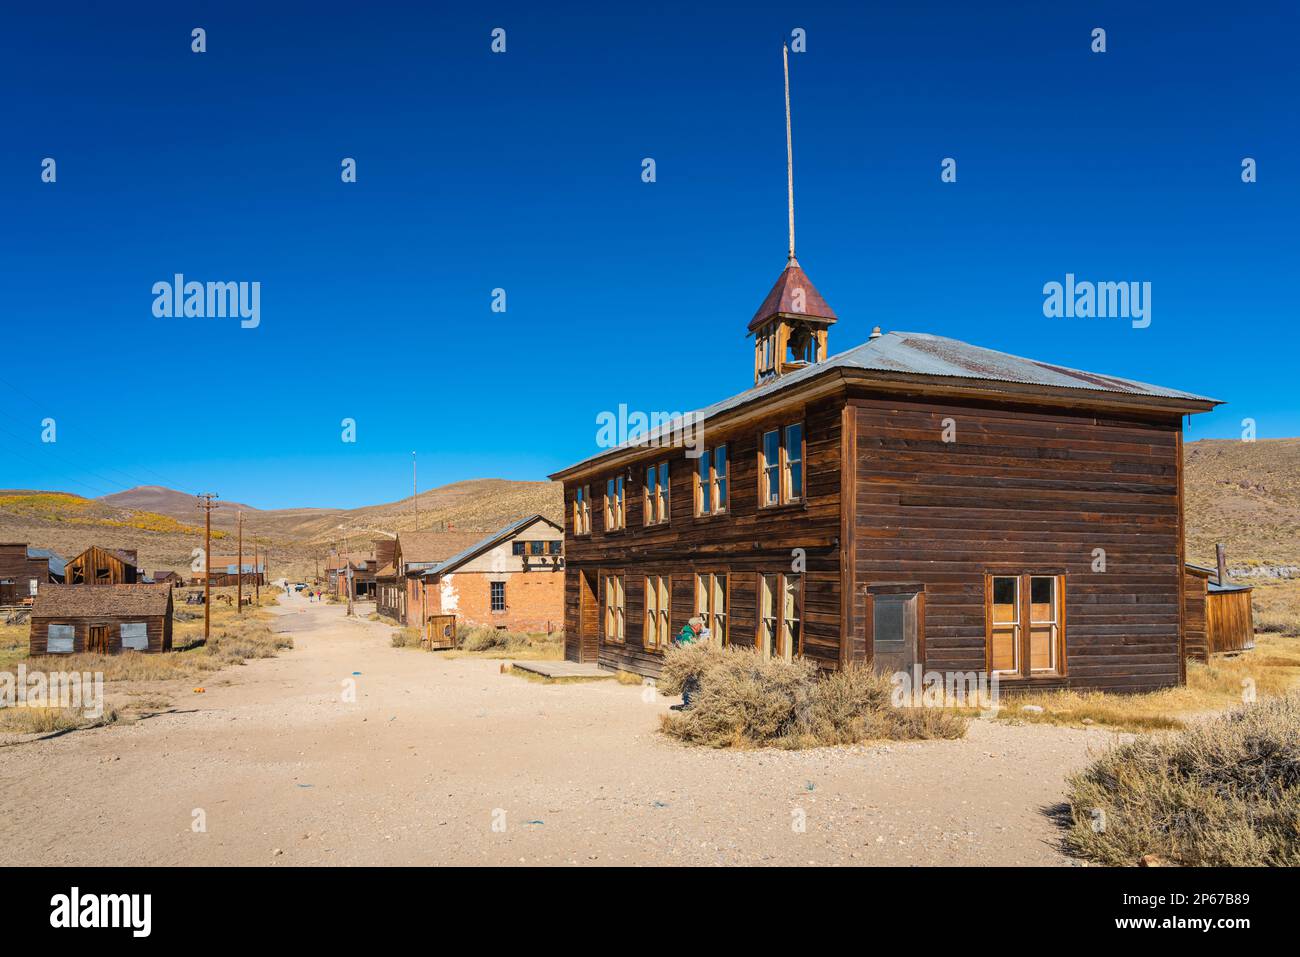 Verlassene, verlassene Gebäude aus Holz in der Geisterstadt Bodie, Mono County, Sierra Nevada, Ostkalifornien, Kalifornien, Vereinigte Staaten von Amerika Stockfoto